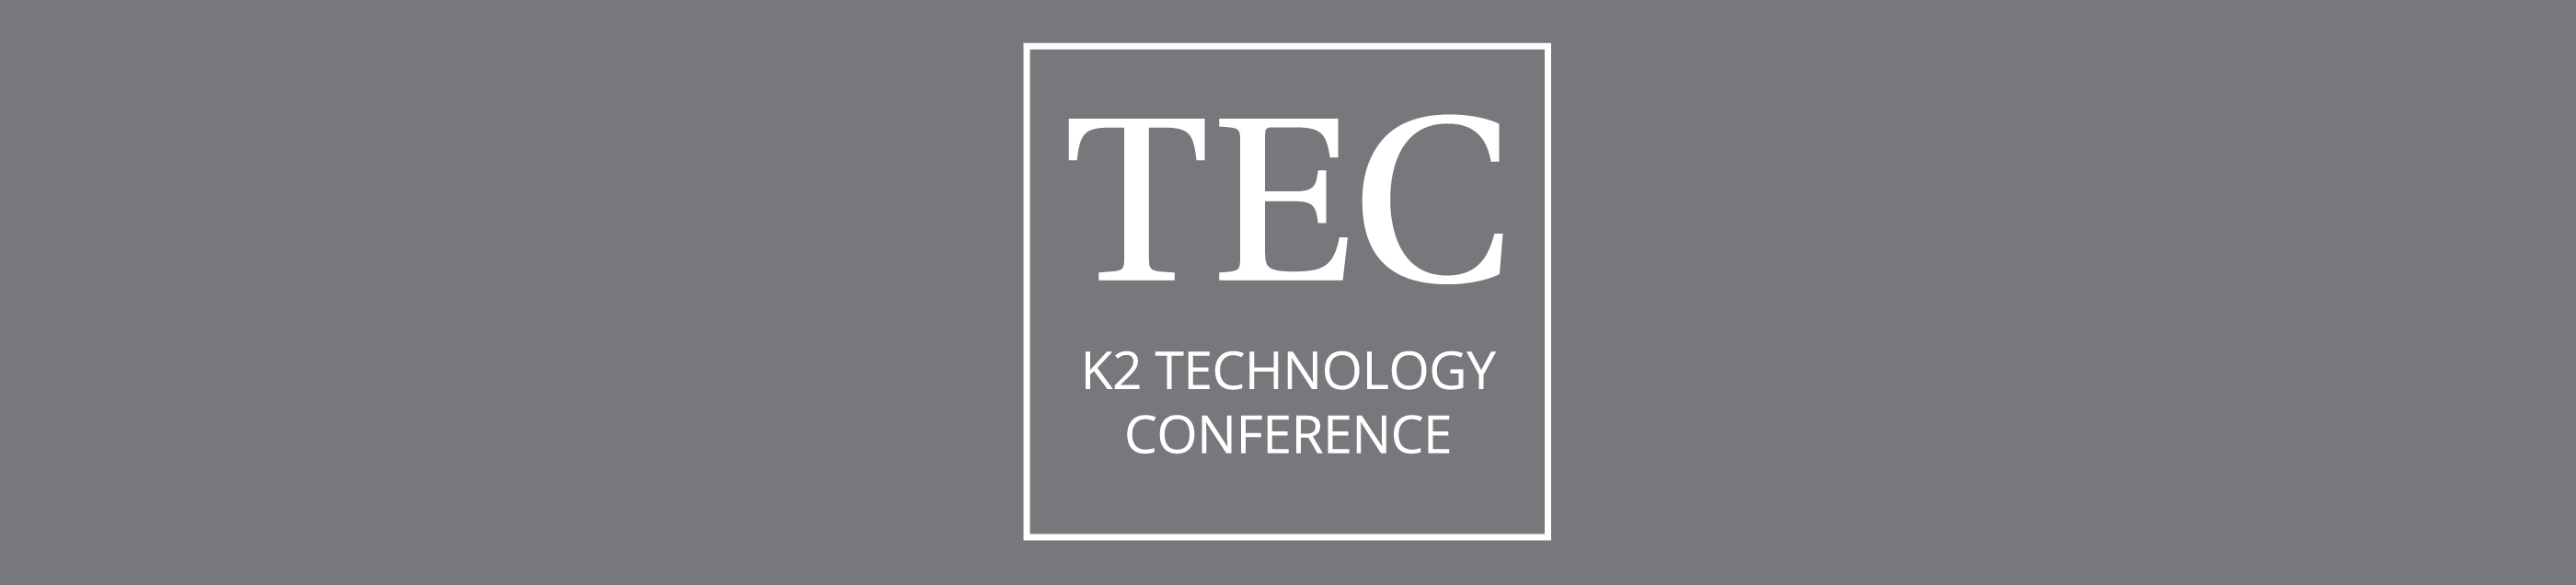 K2 Technology Conference